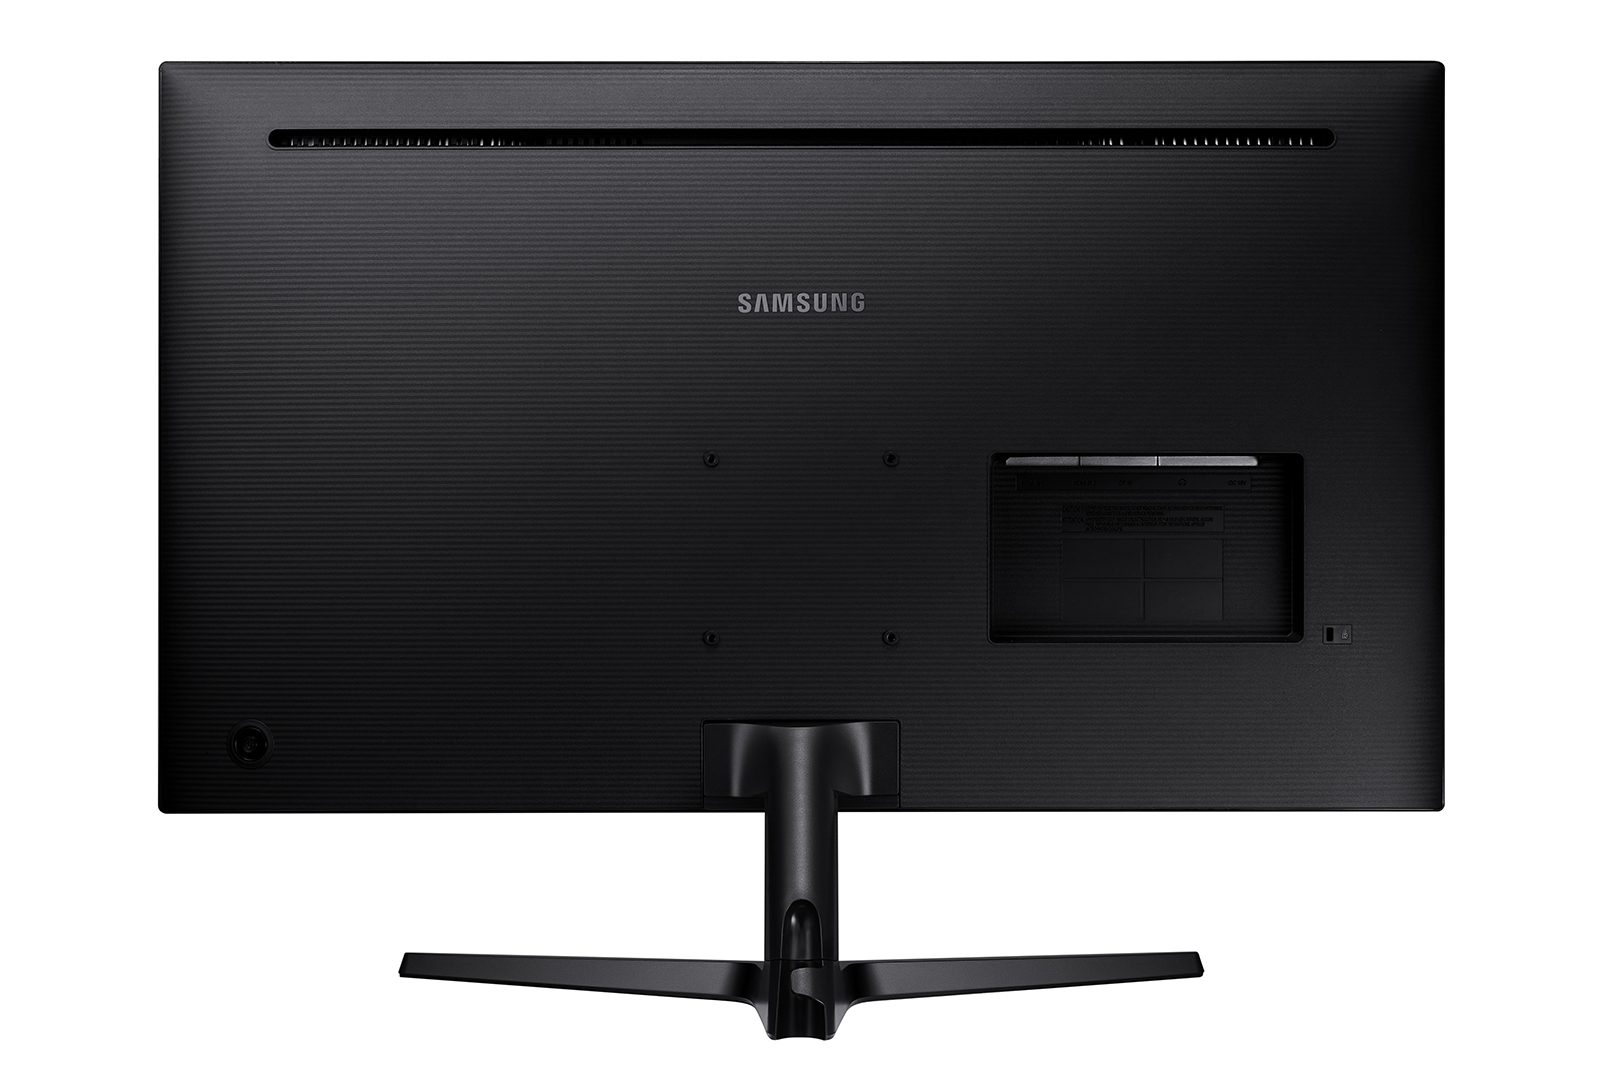 Samsung Space Monitor 32, análisis: review con características y